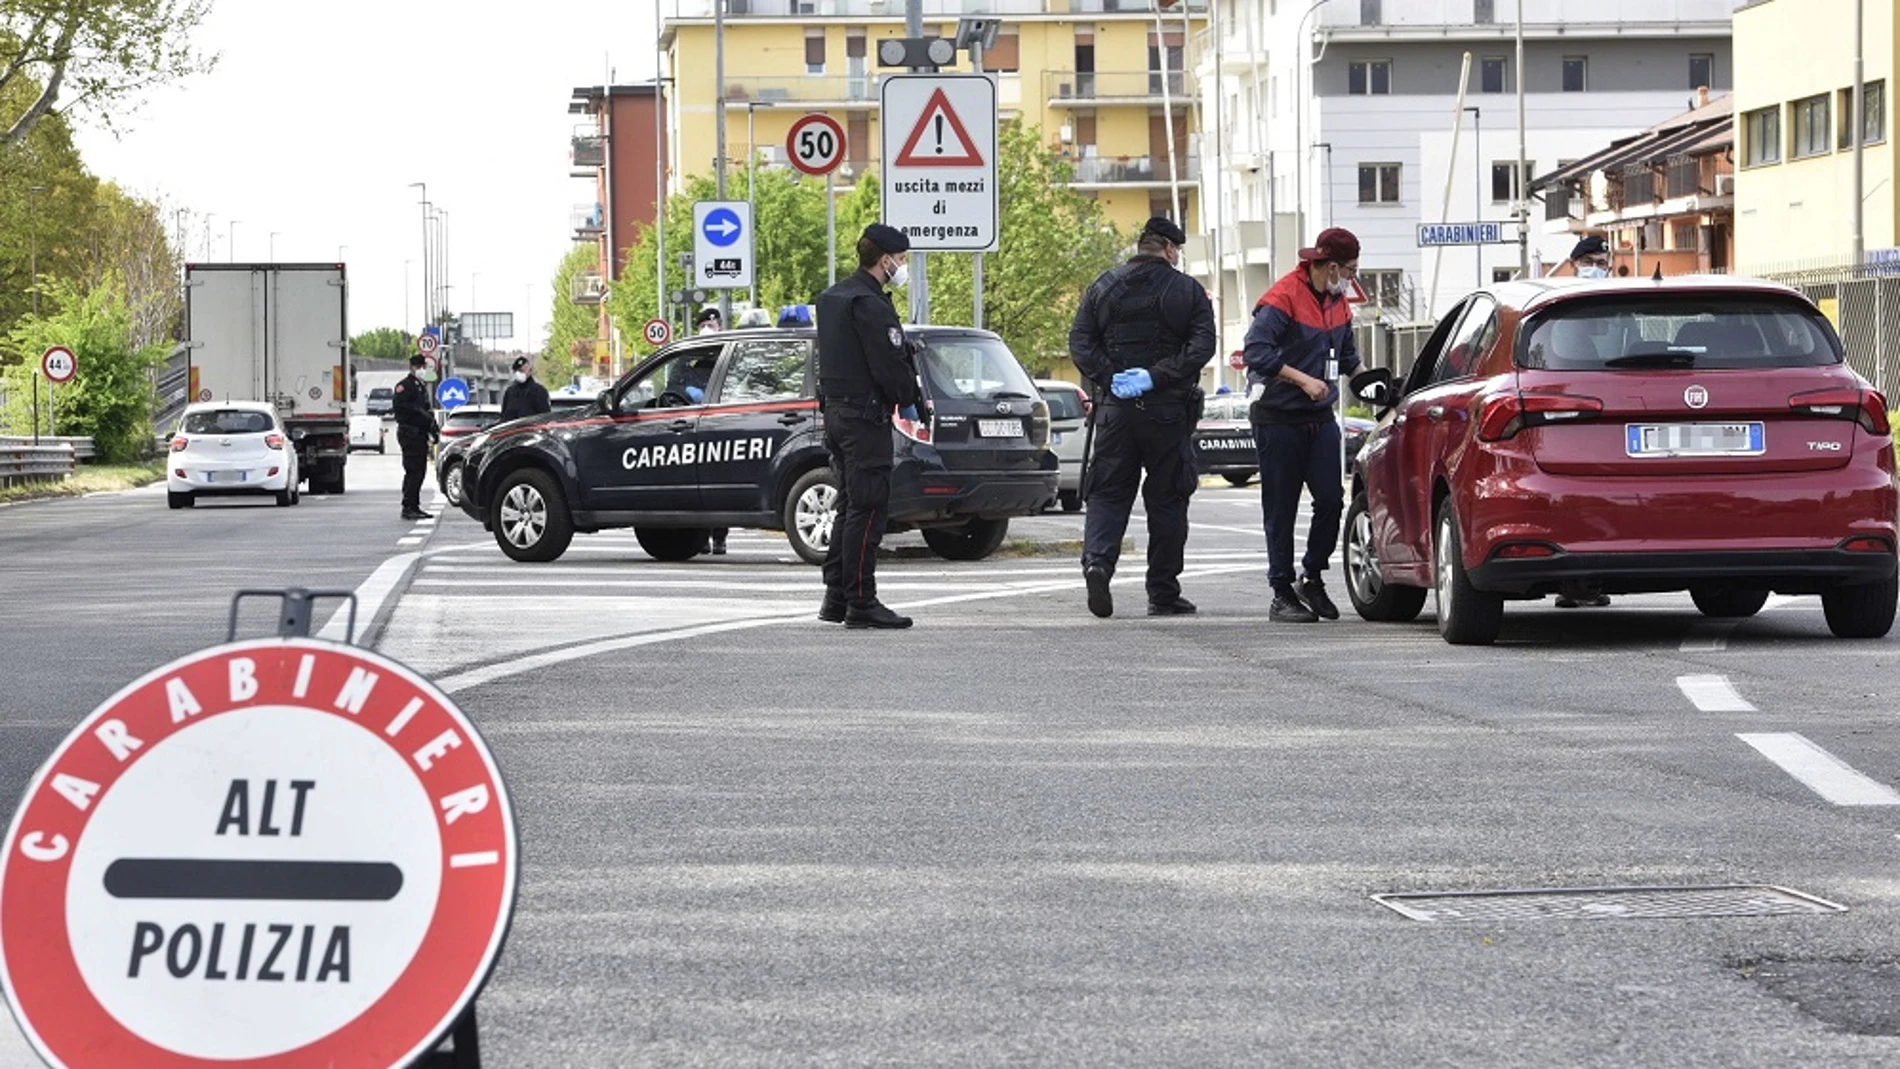 Imagen de policías en un control de tráfico de Italia